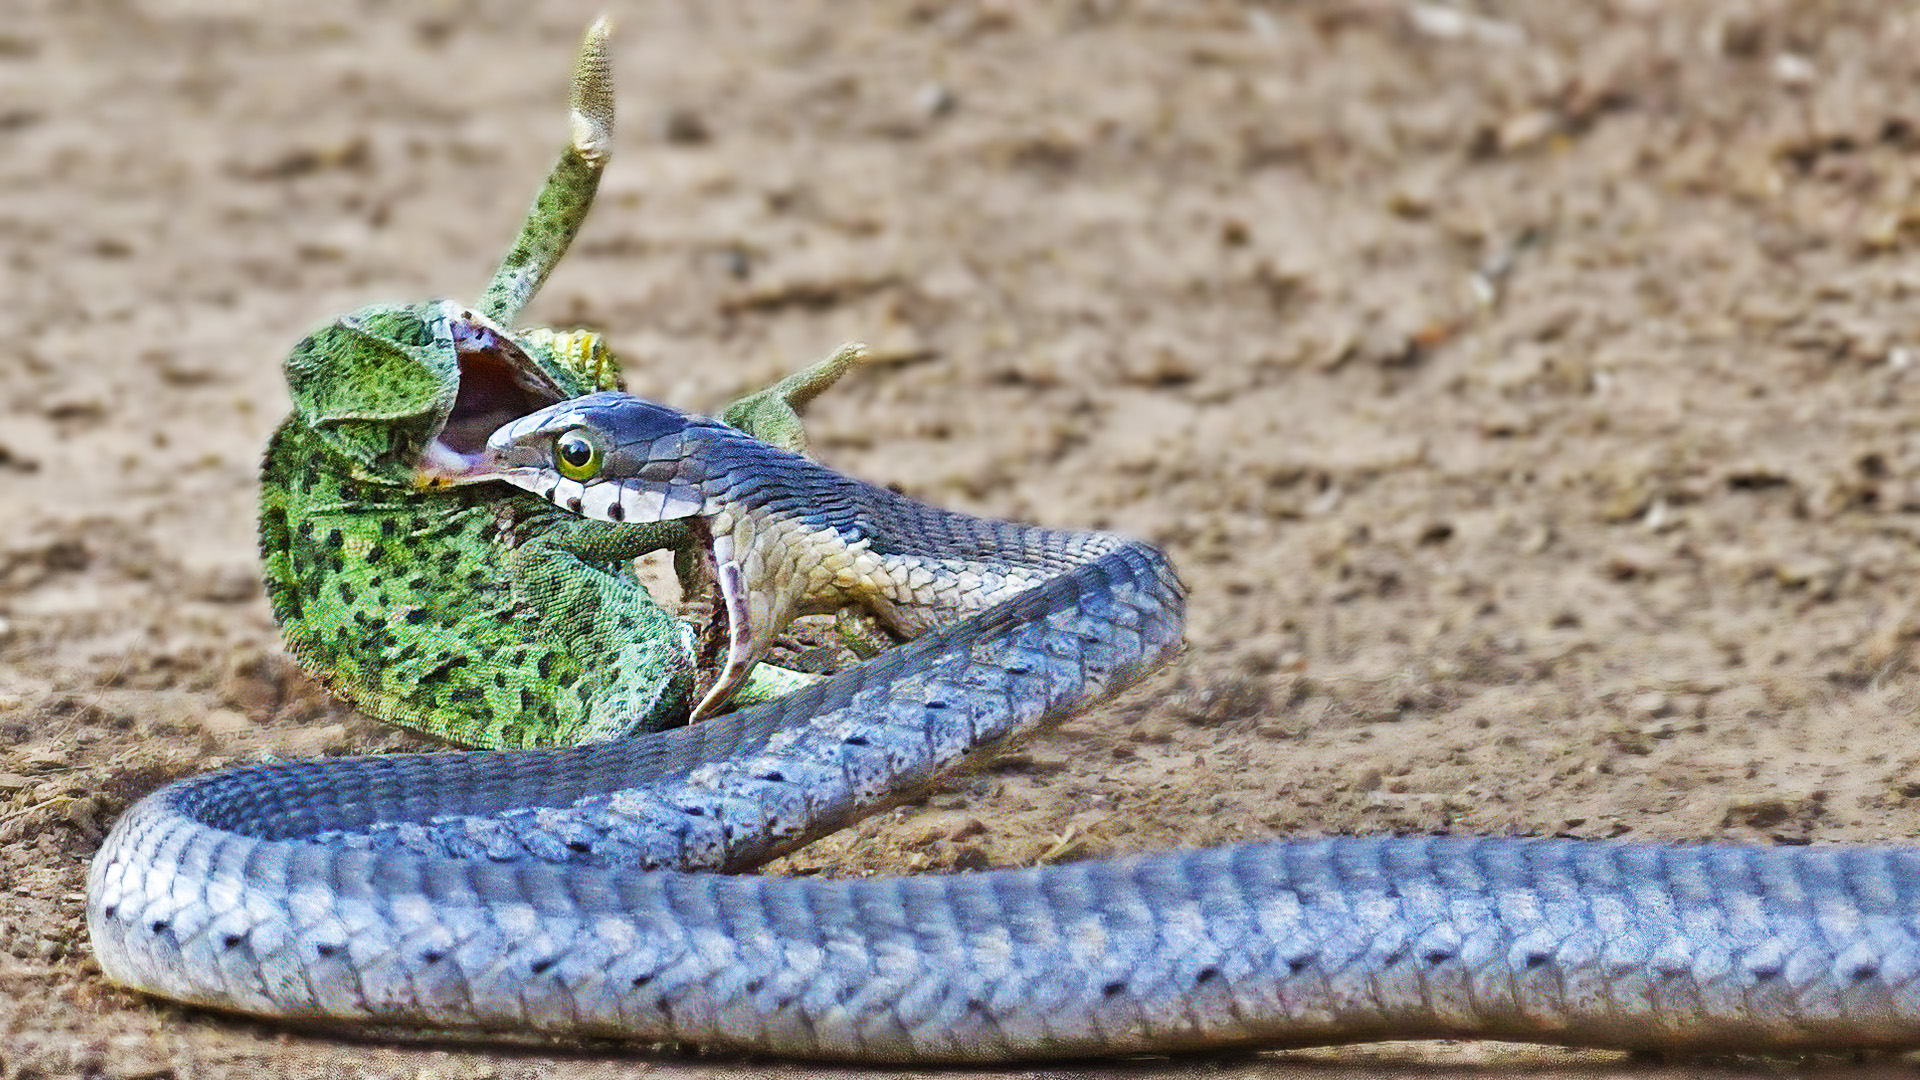 Chameleon Fights Back at Striking Snake